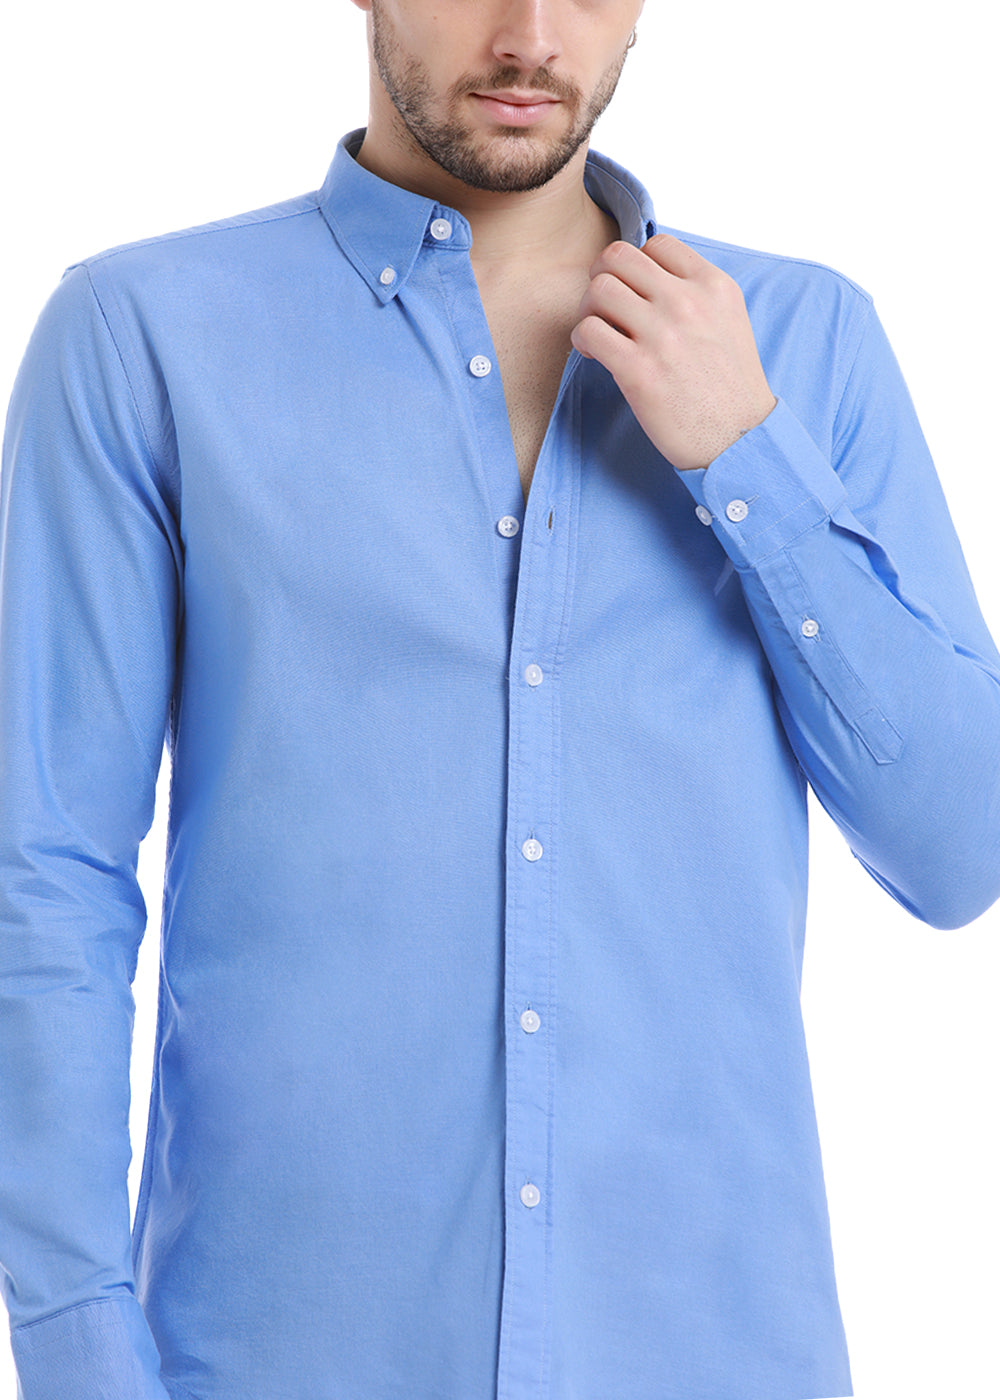 Get Light Cobalt Blue Oxford Shirt